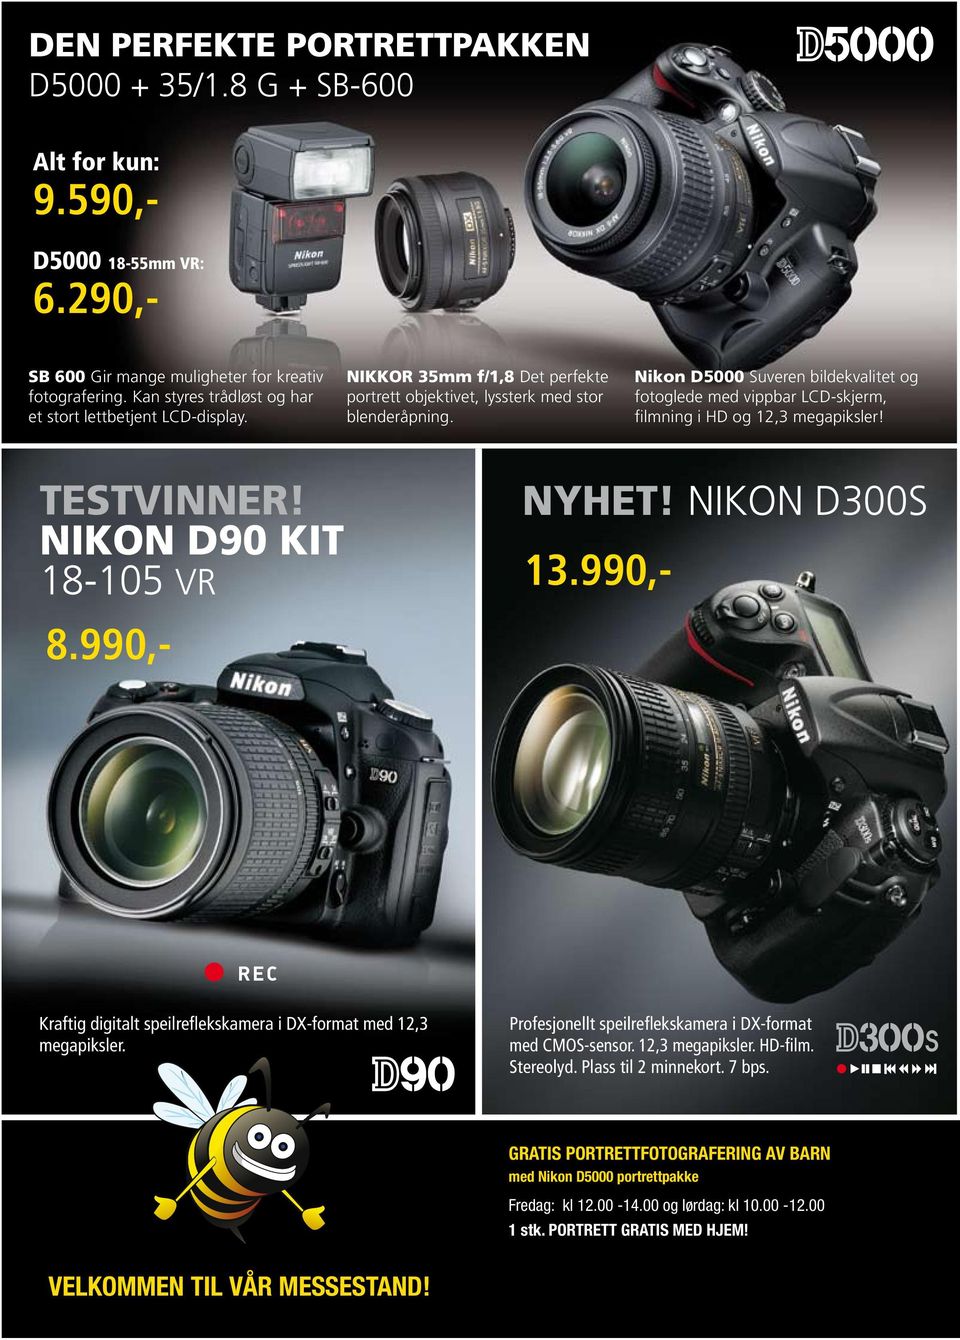 Nikon D5000 Suveren bildekvalitet og fotoglede med vippbar LCD-skjerm, filmning i HD og 12,3 megapiksler! testvinner! NYHet! NiKoN D300S NIKON D90 KIt 18-105 VR 13.990,- 8.